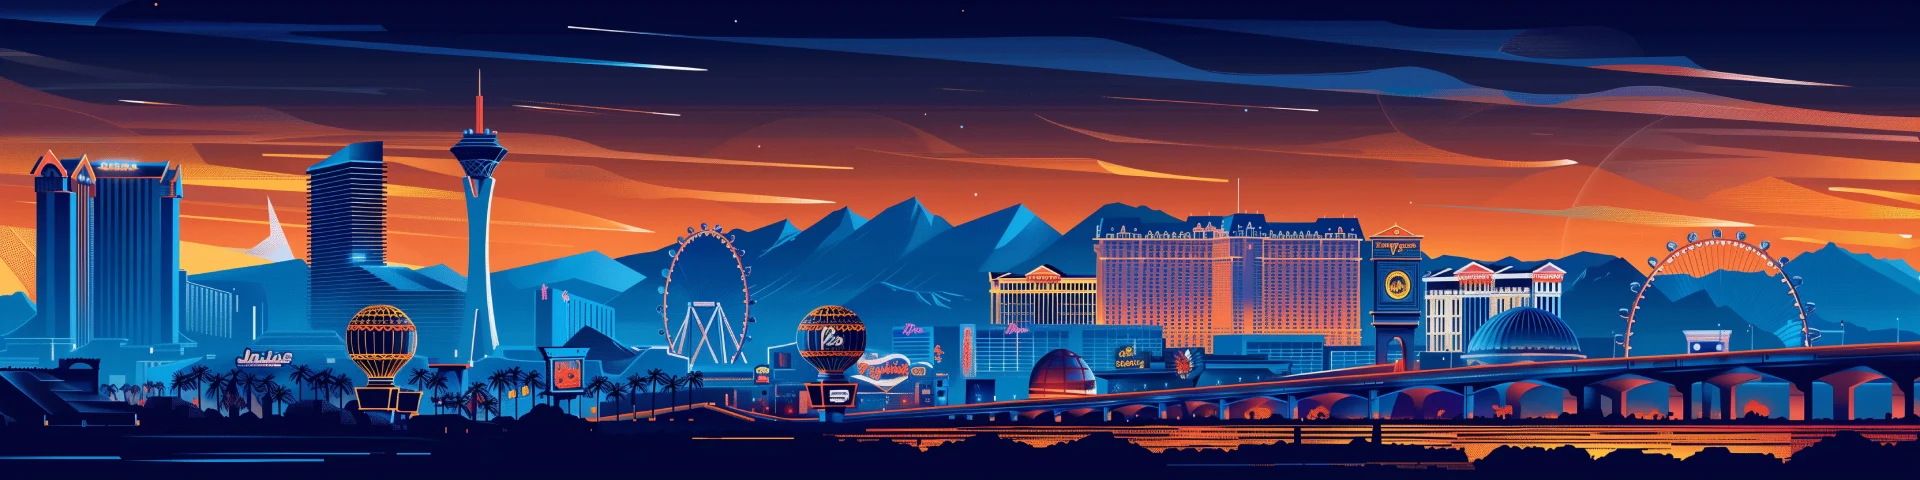 Las Vegas cartoon drawn skyline